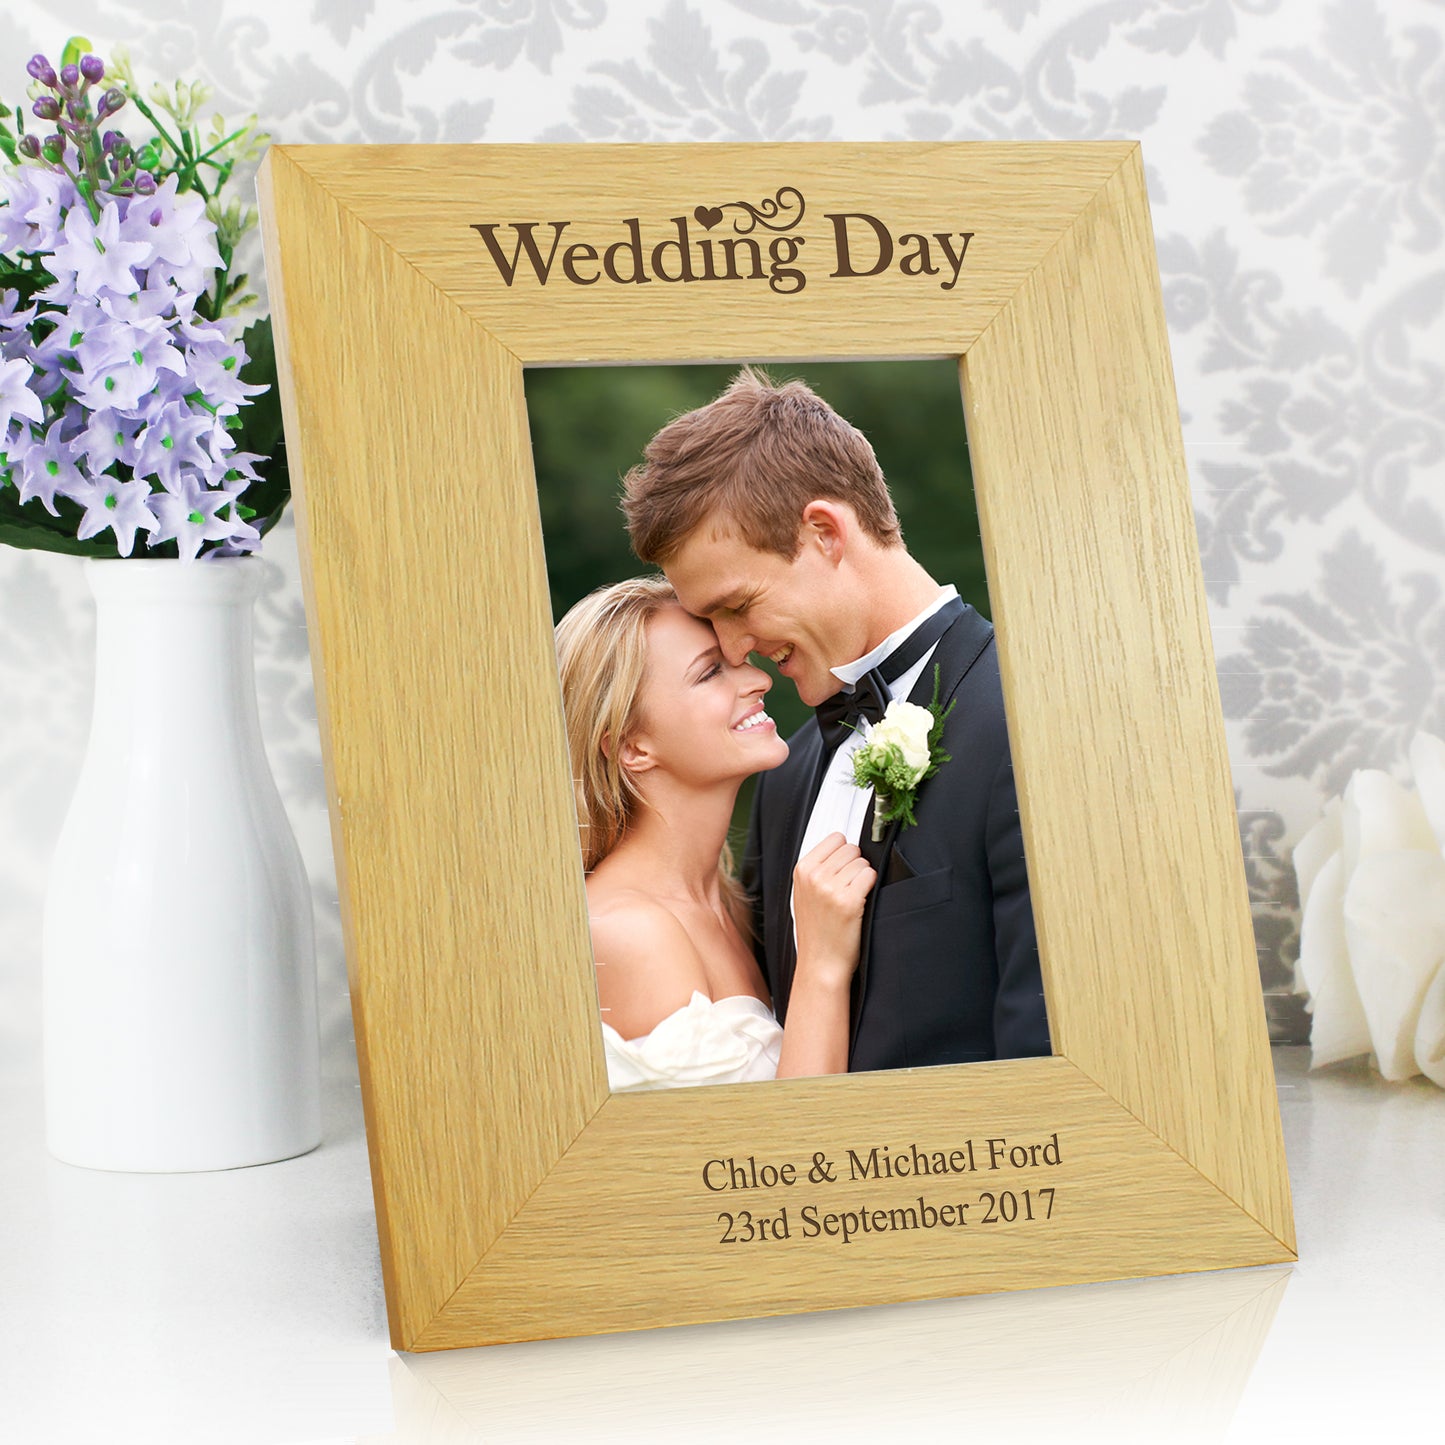 Personalised Wedding Day 4x6 Oak Finish Photo Frame - Personalise It!